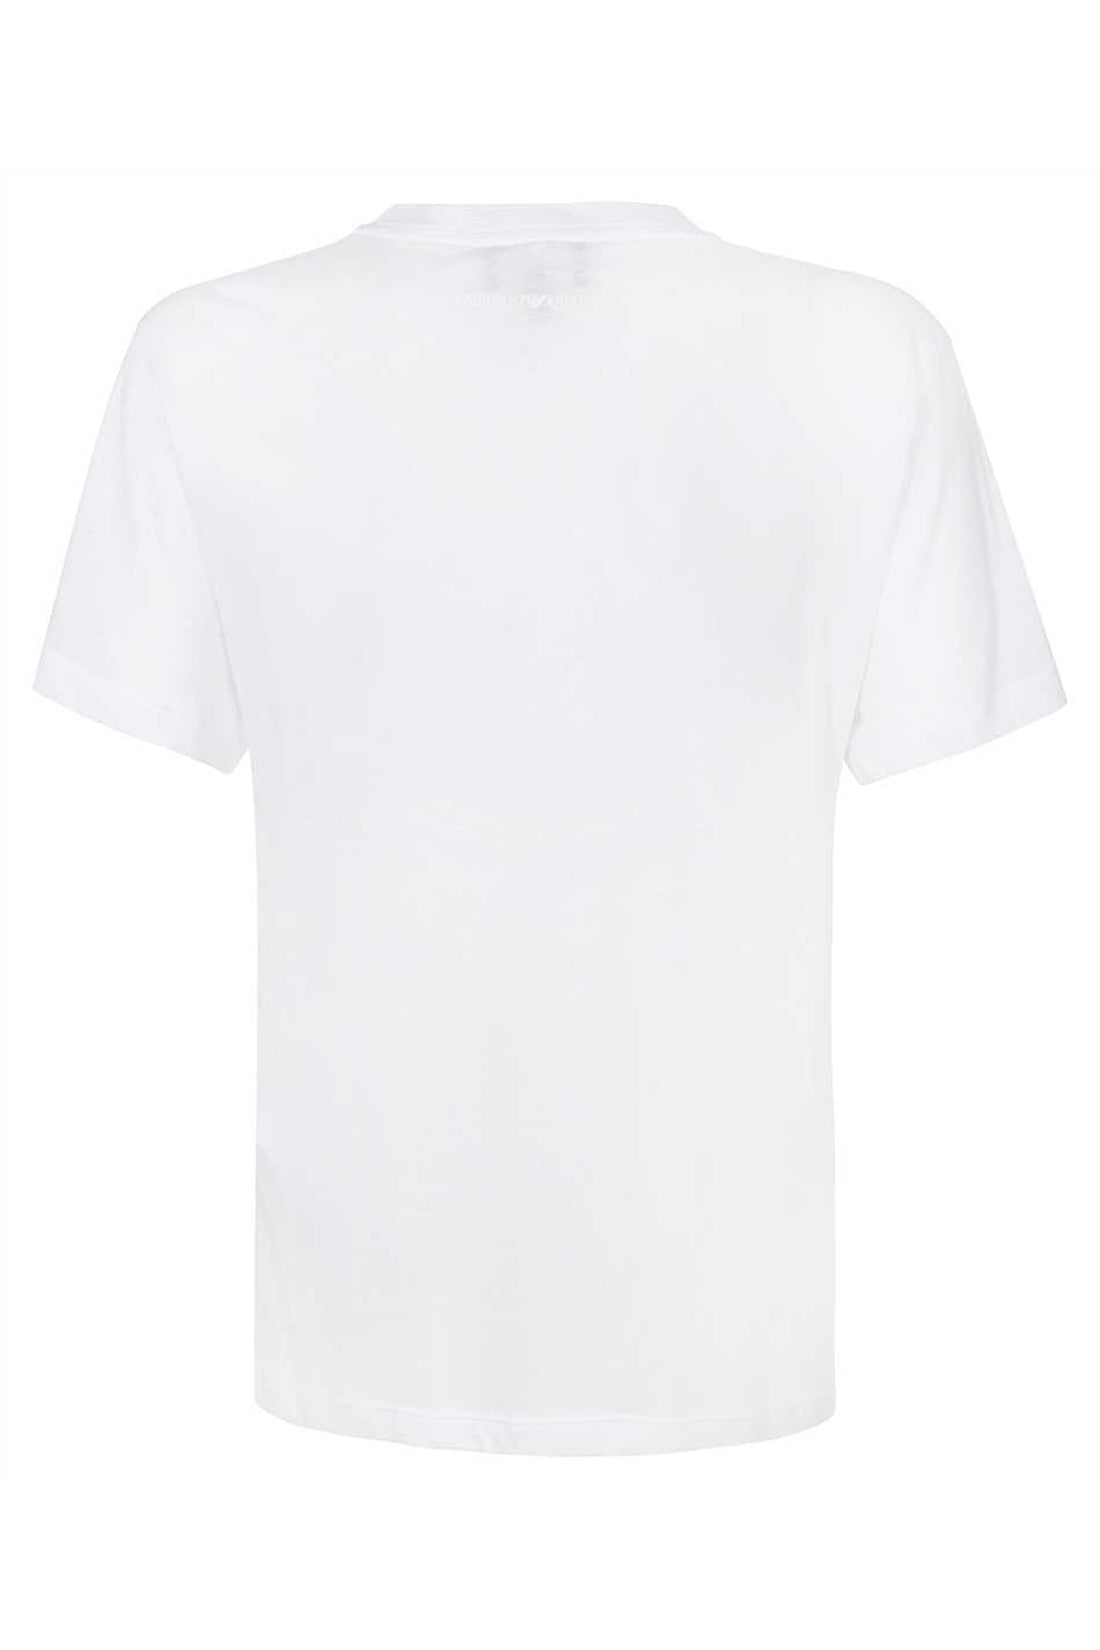 Piralo-OUTLET-SALE-Printed cotton T-shirt-ARCHIVIST